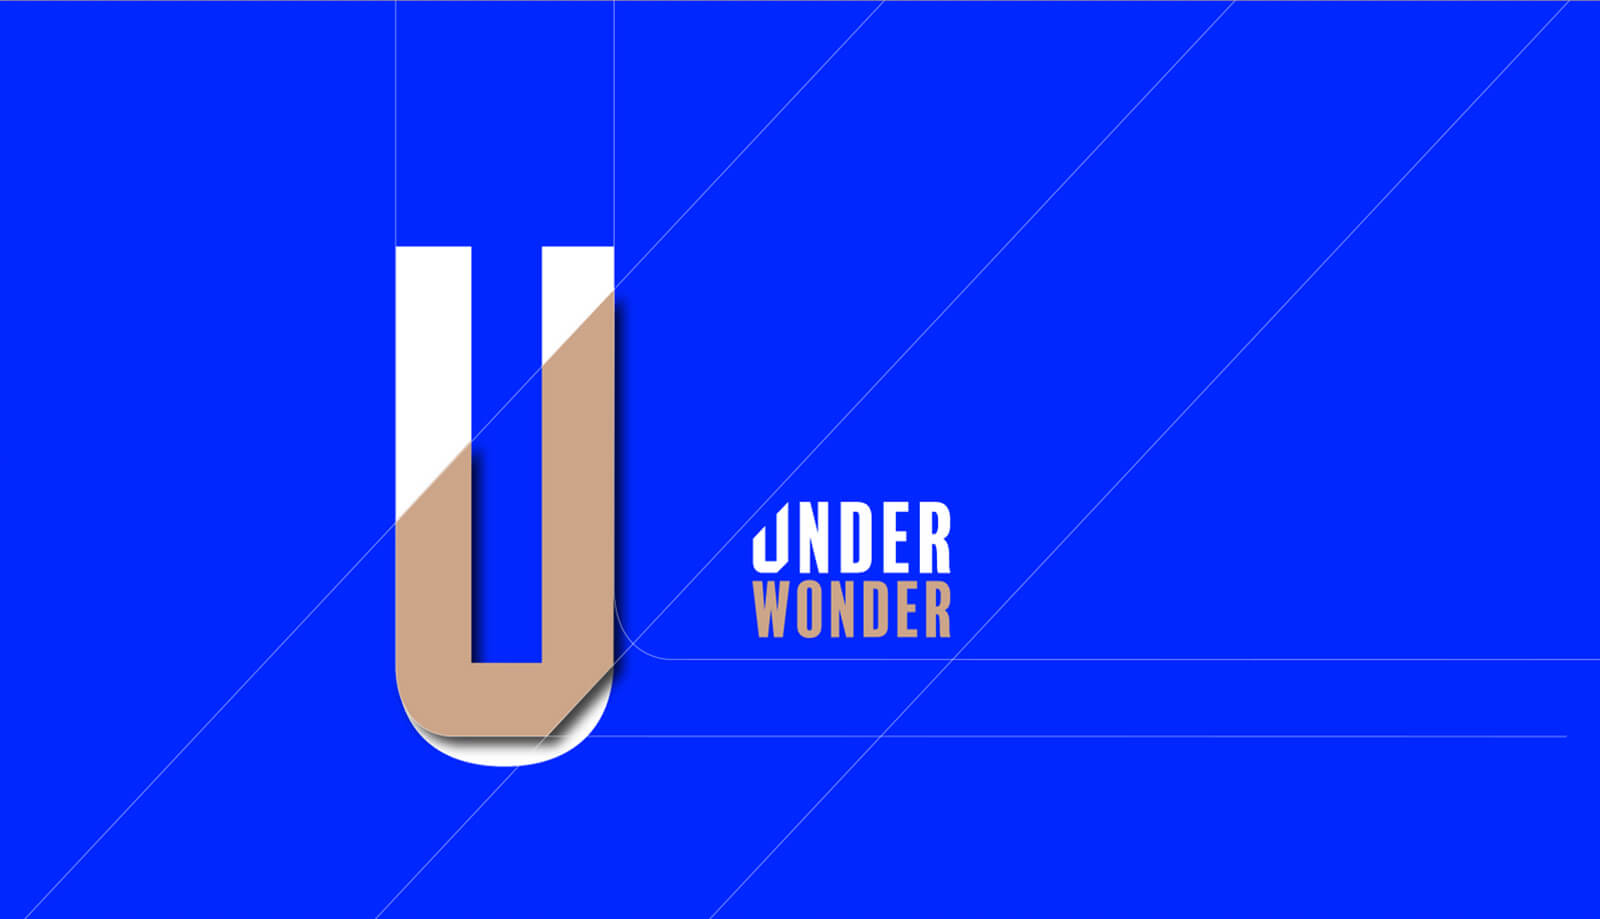 Under Wonder - Green Goose Design